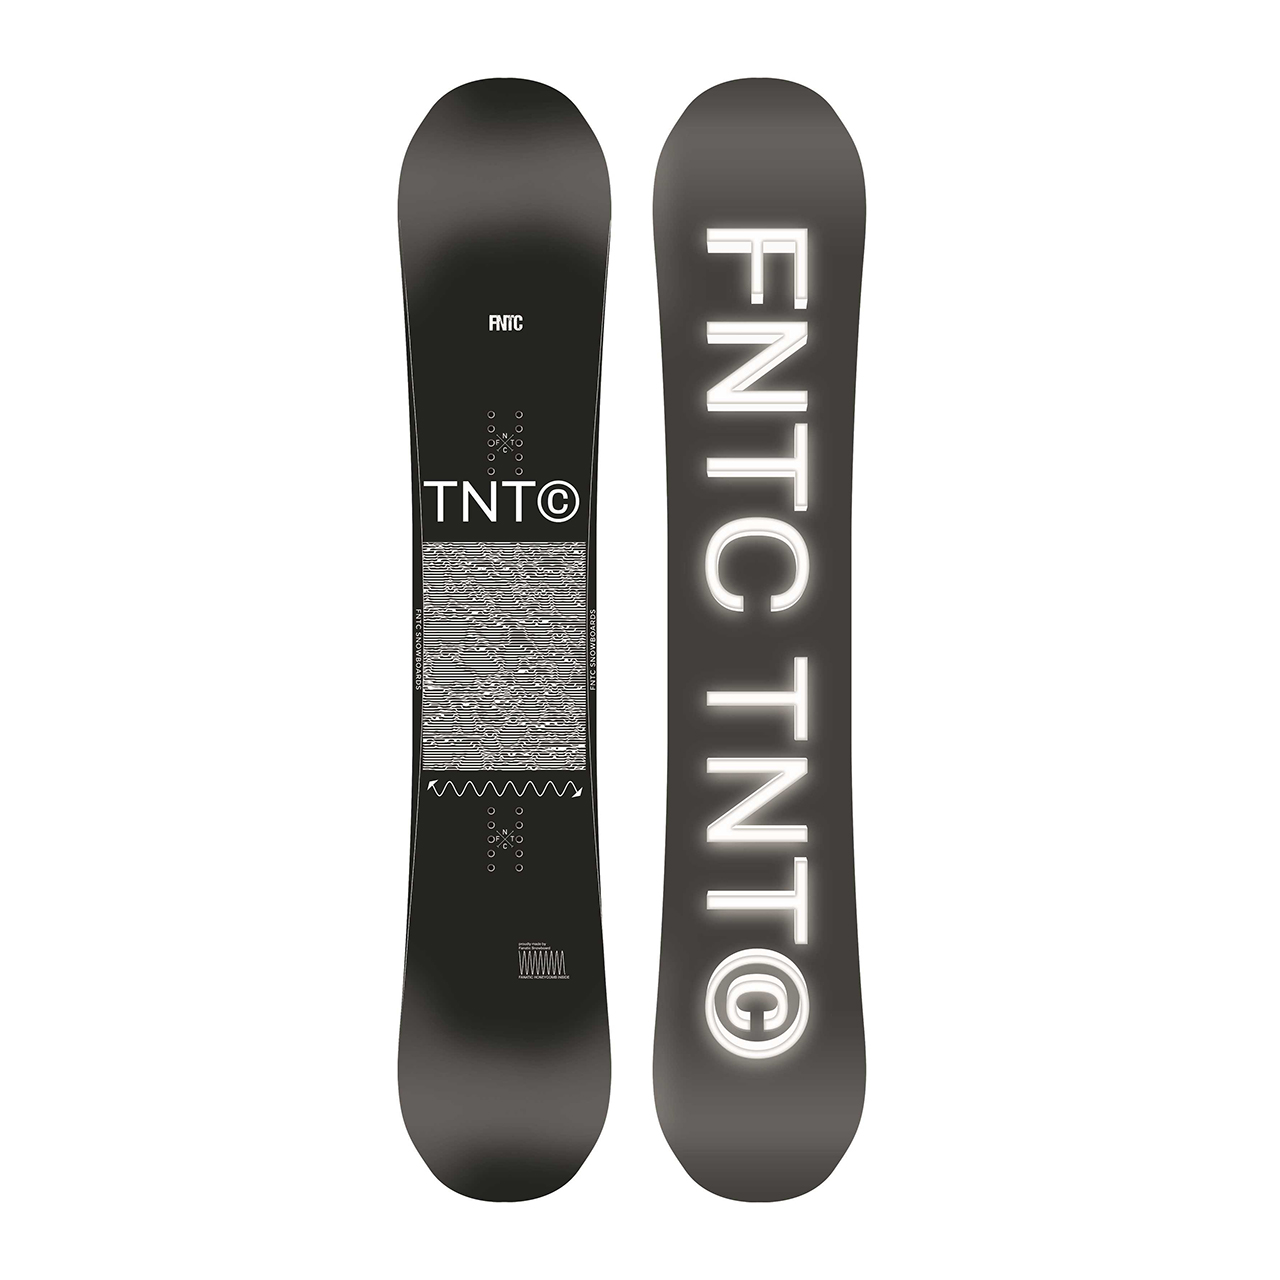 新品 FNTC TNT R スノーボード シュリンク付き グラトリ 21-22 | nate 